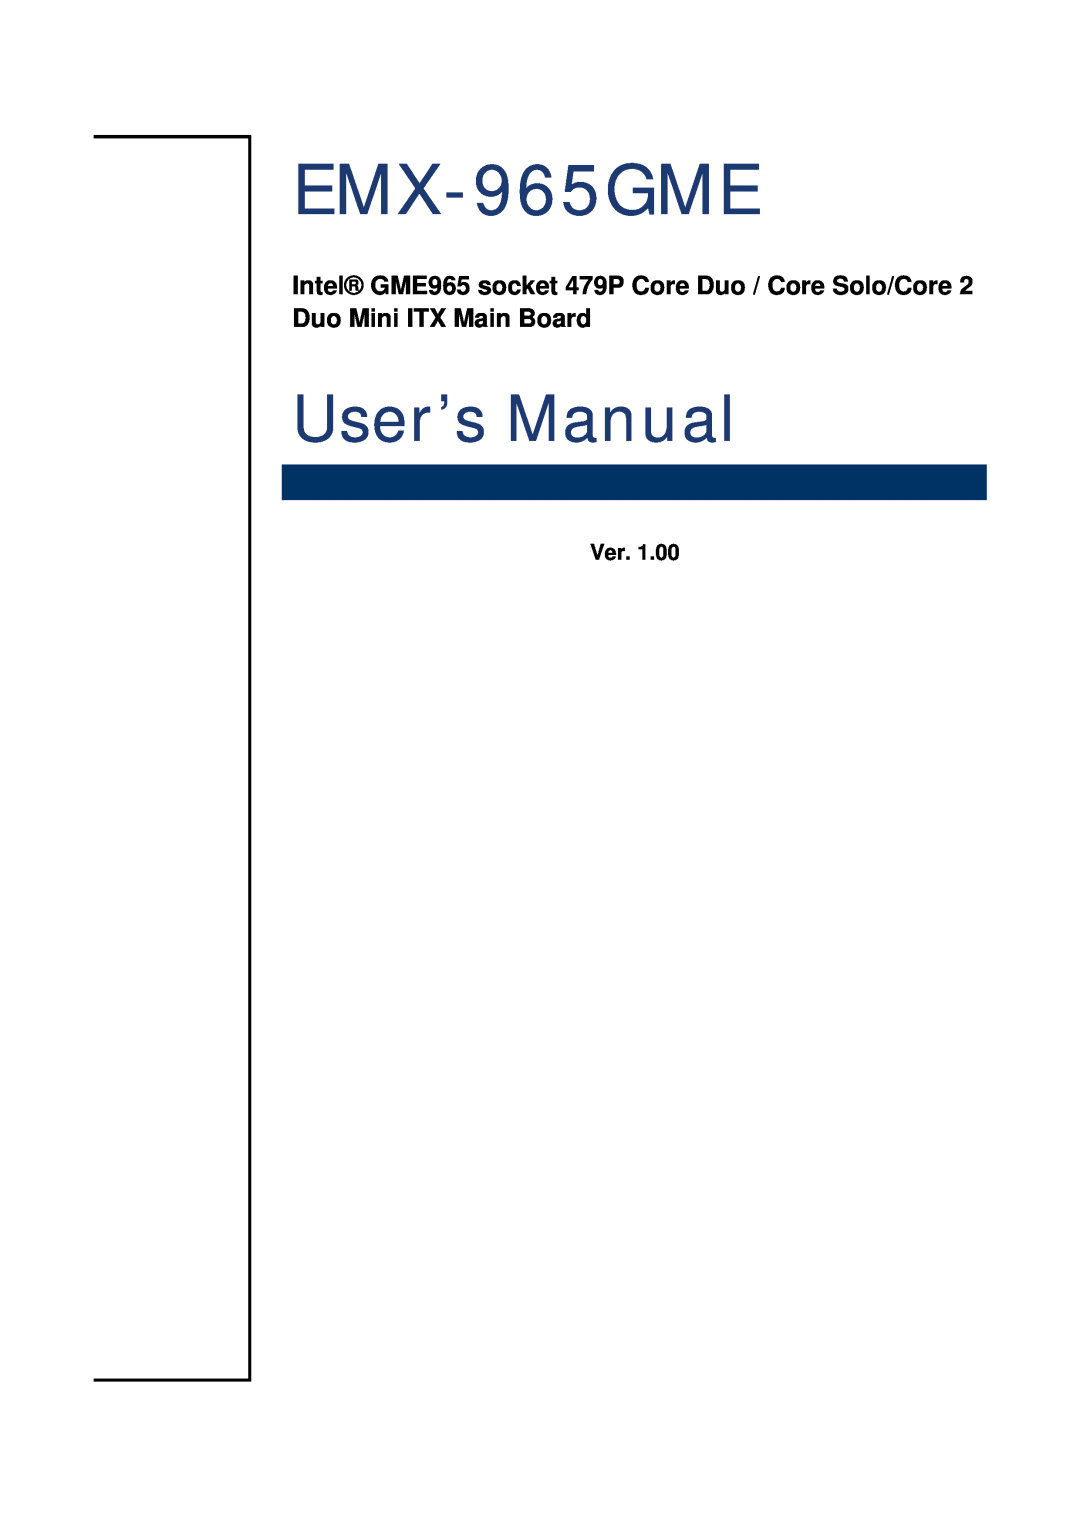 Intel EMX-965GME user manual Ver, User’s Manual 